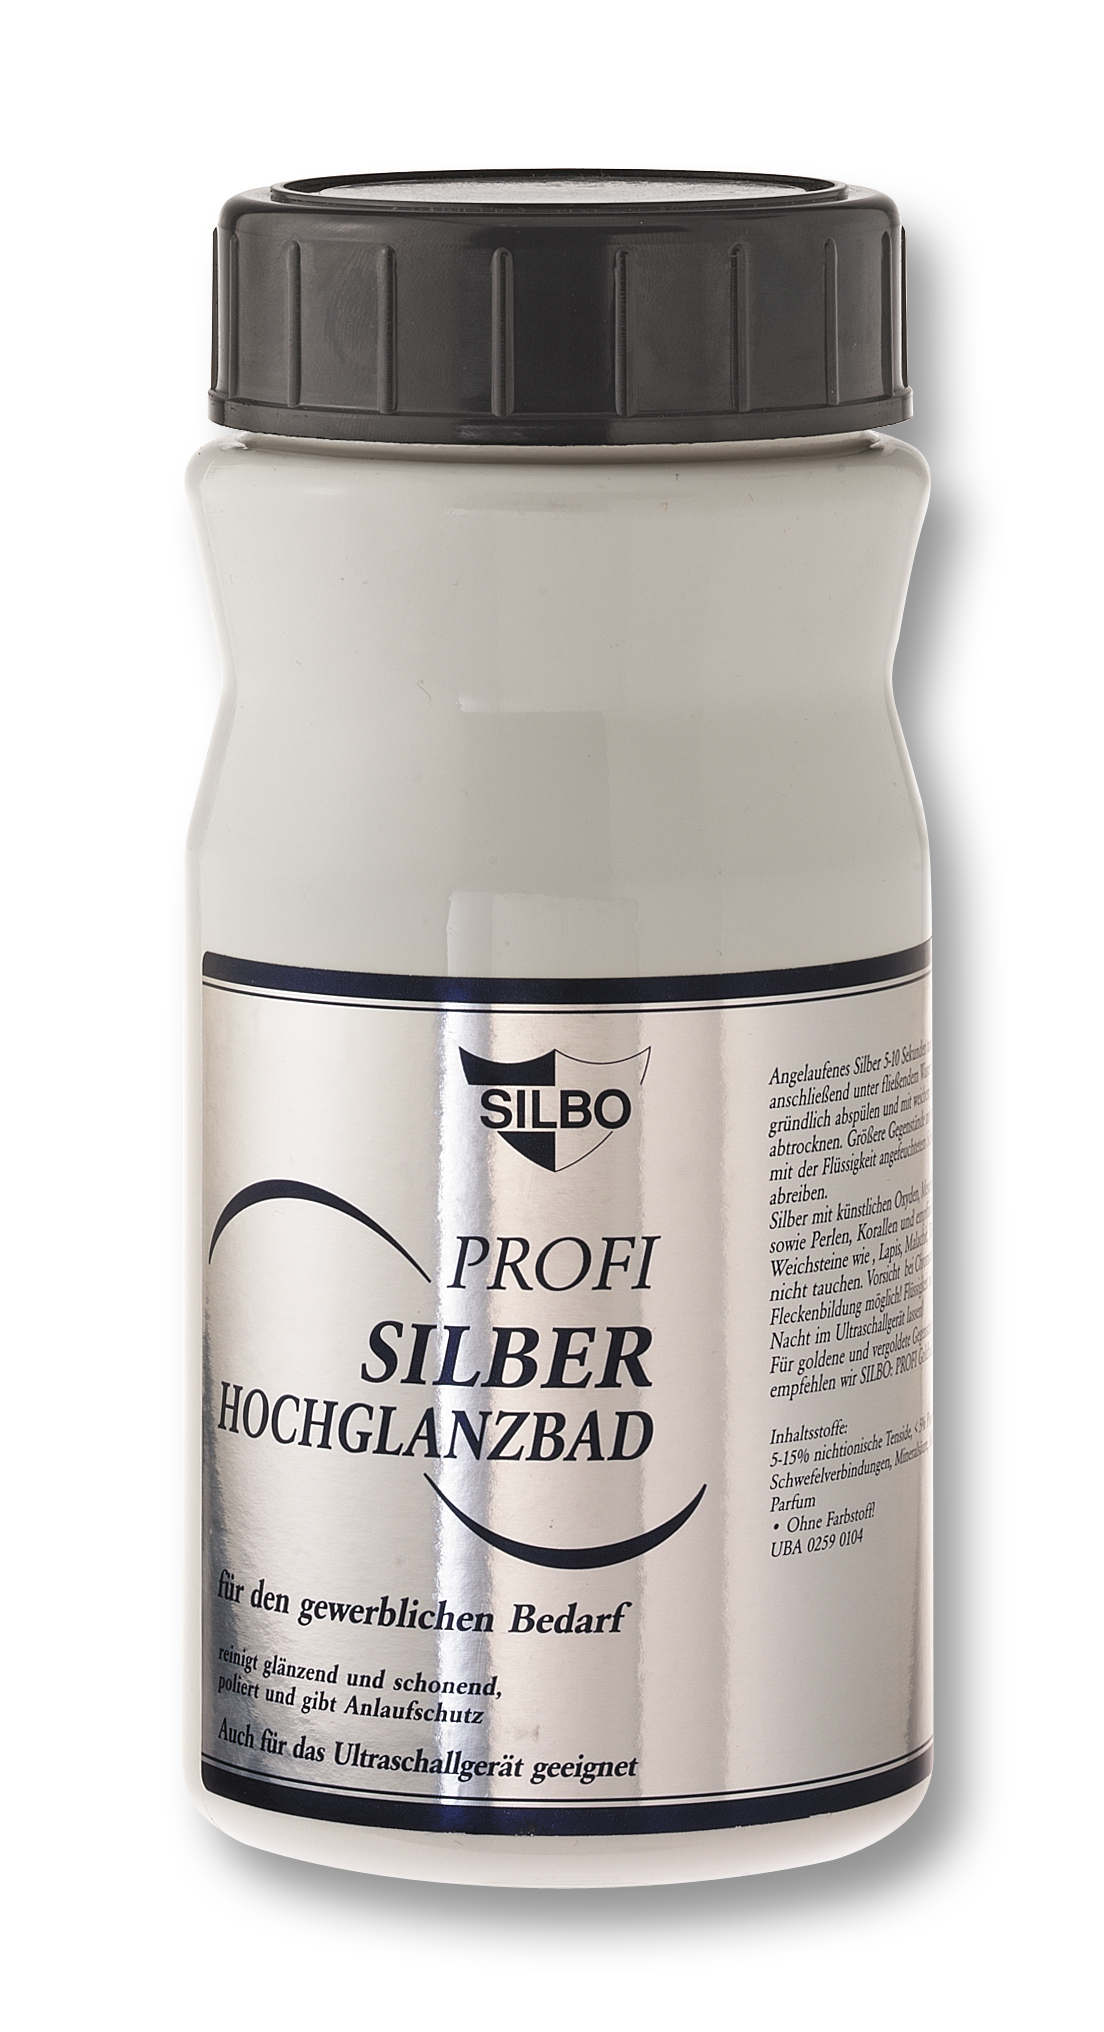 Silber-Hochglanztauchbad 1 Liter Vido